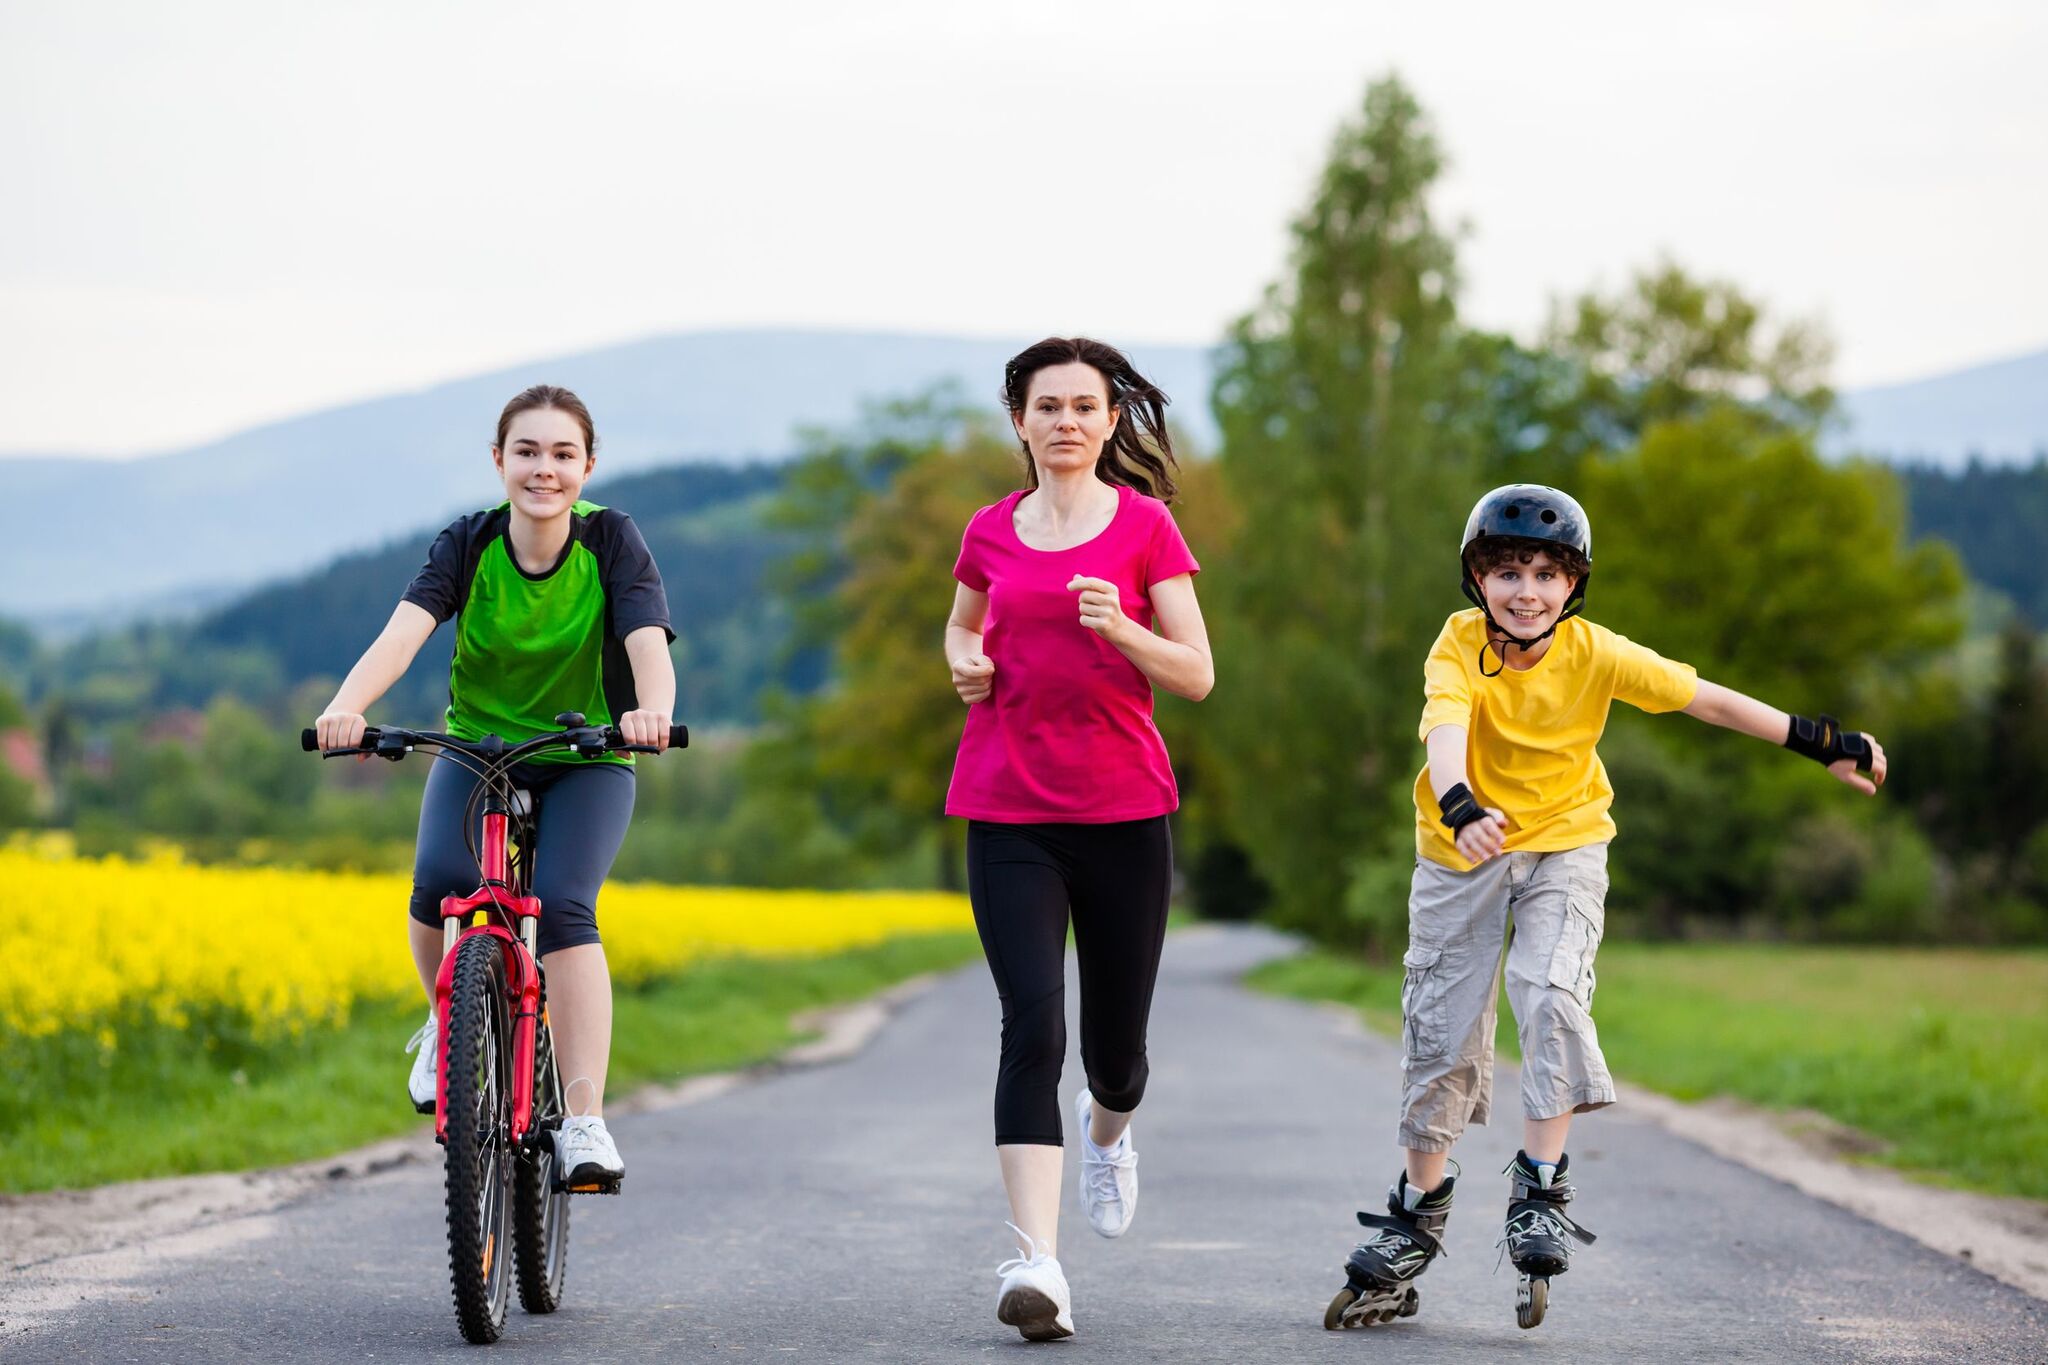 Здоровые развлечения. Активный образ жизни. Кататься на велосипеде. Сеьм язанмиается спортом. Активный и здоровый образ жизни.